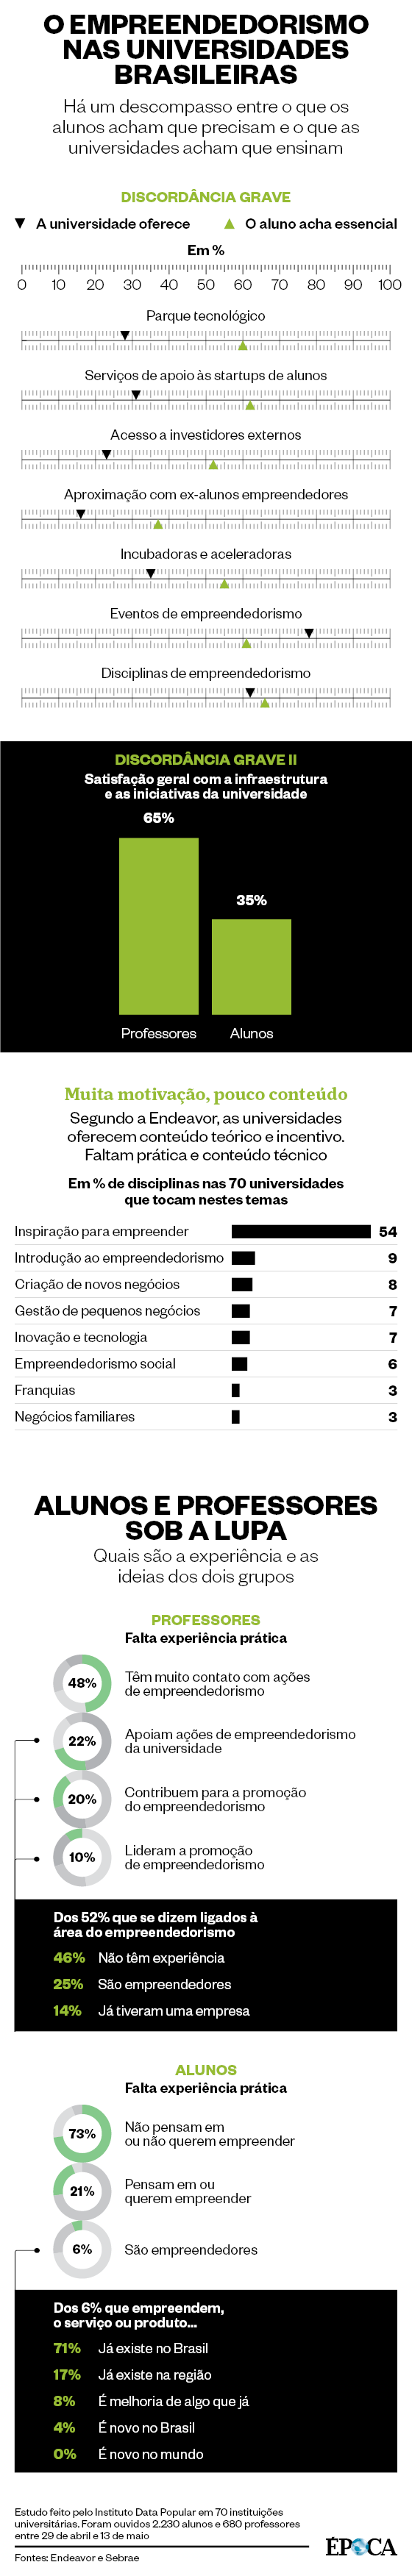 O empreendedorismo nas universidades brasileiras (Foto: Época )